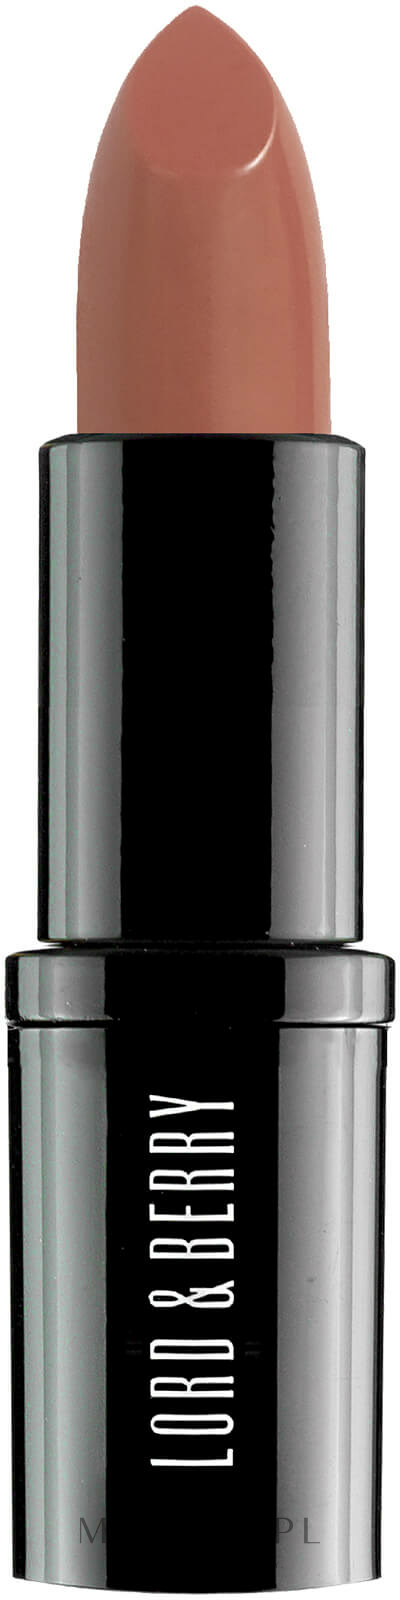 Matowa szminka do ust - Lord & Berry Absolute Bright Satin Lipstick — Zdjęcie 7430 - Naked